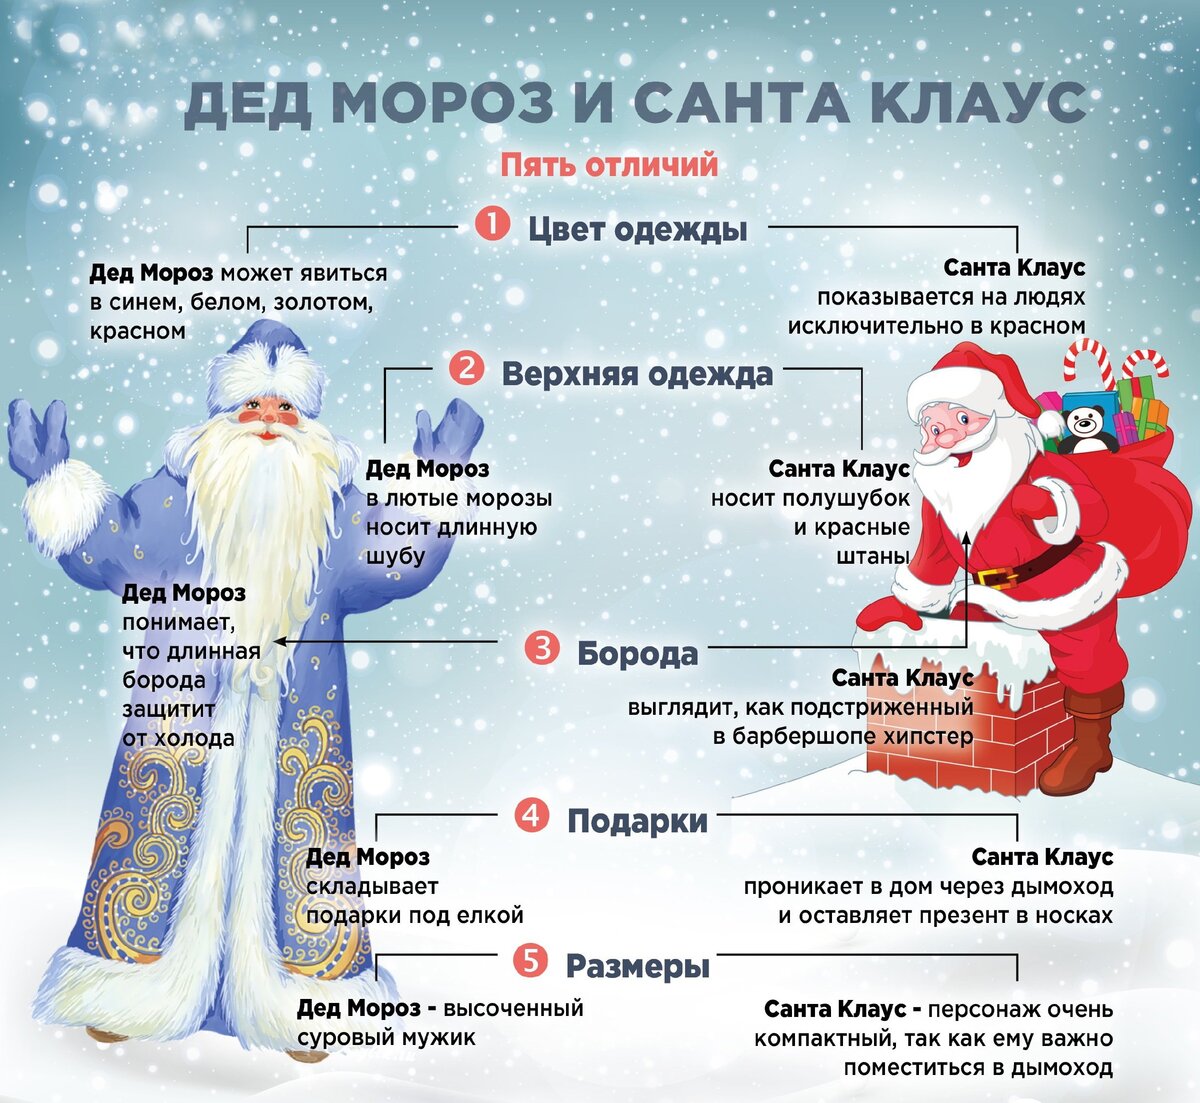 Угадывай деда мороза. Различия Деда Мороза и Санта Клауса. Различия между дедом Морозом и Санта Клаусом. Дед Мороз и сантаелаус.